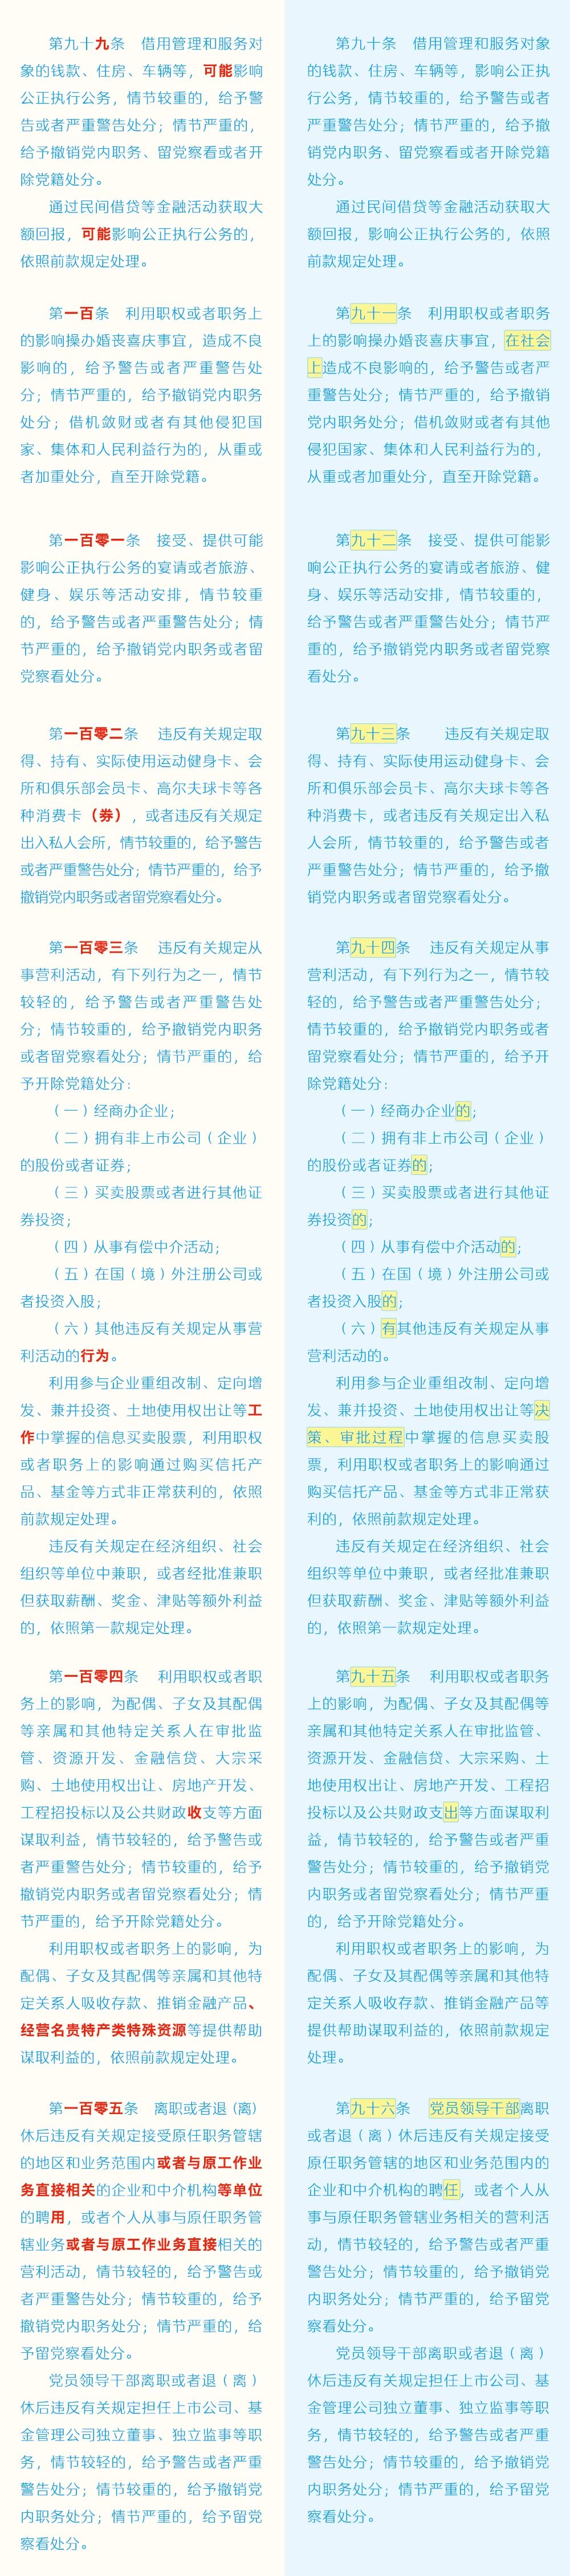 《中国共产党纪律处分条例》修订条文对照表15.jpg